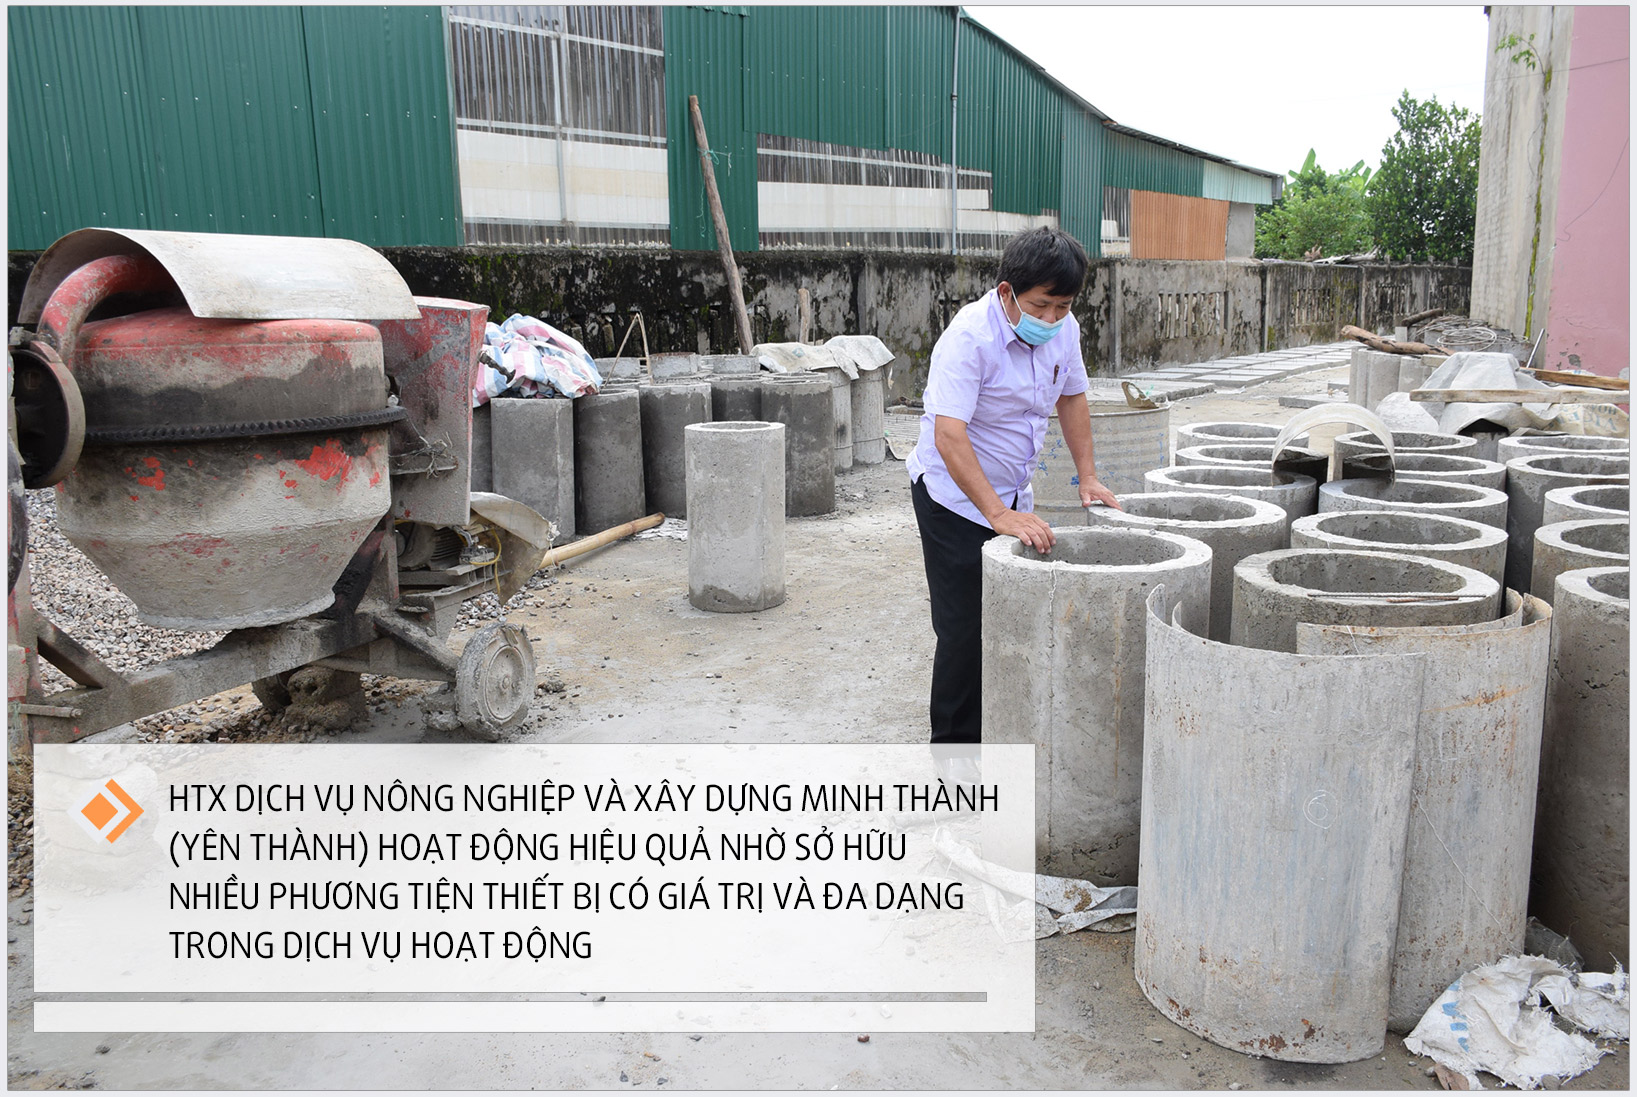 Dịch vụ đúc cống xi măng của HTX Dịch vụ nông nghiệp và xây dựng Minh Thành (Yên Thành). Ảnh: Xuân Hoàng